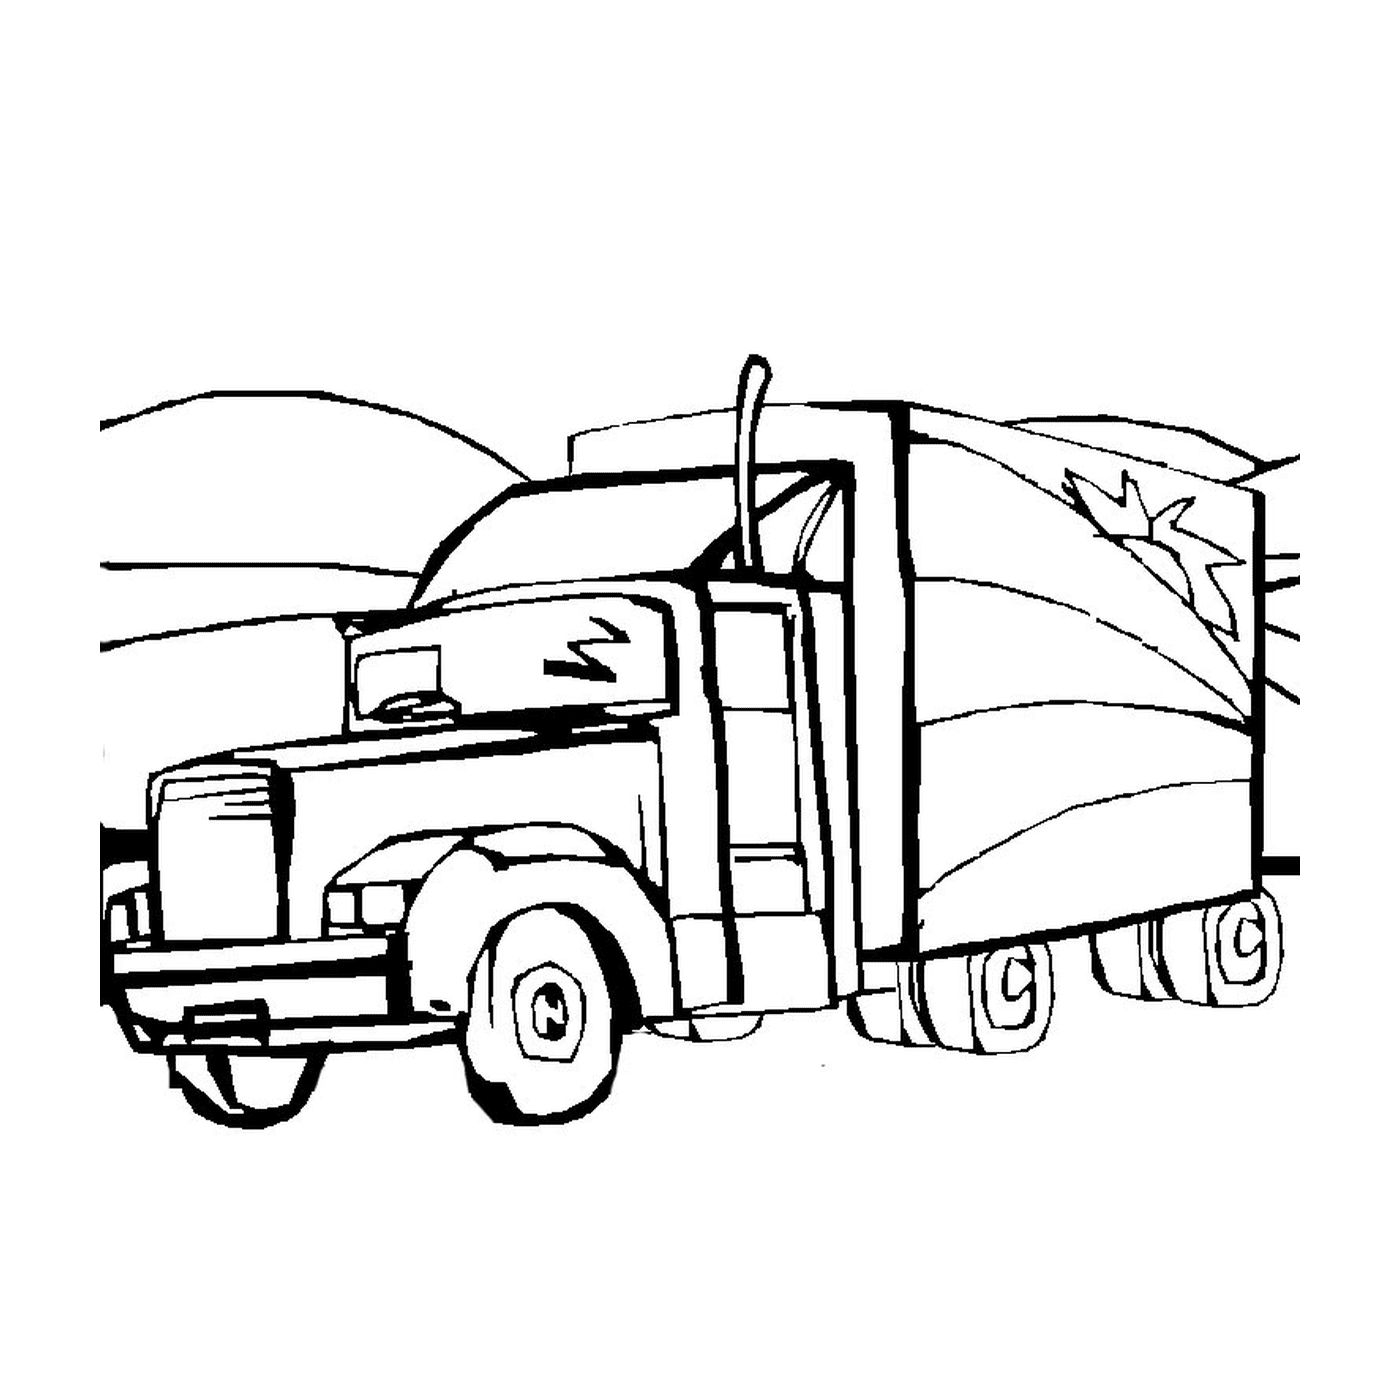  A trailer truck 